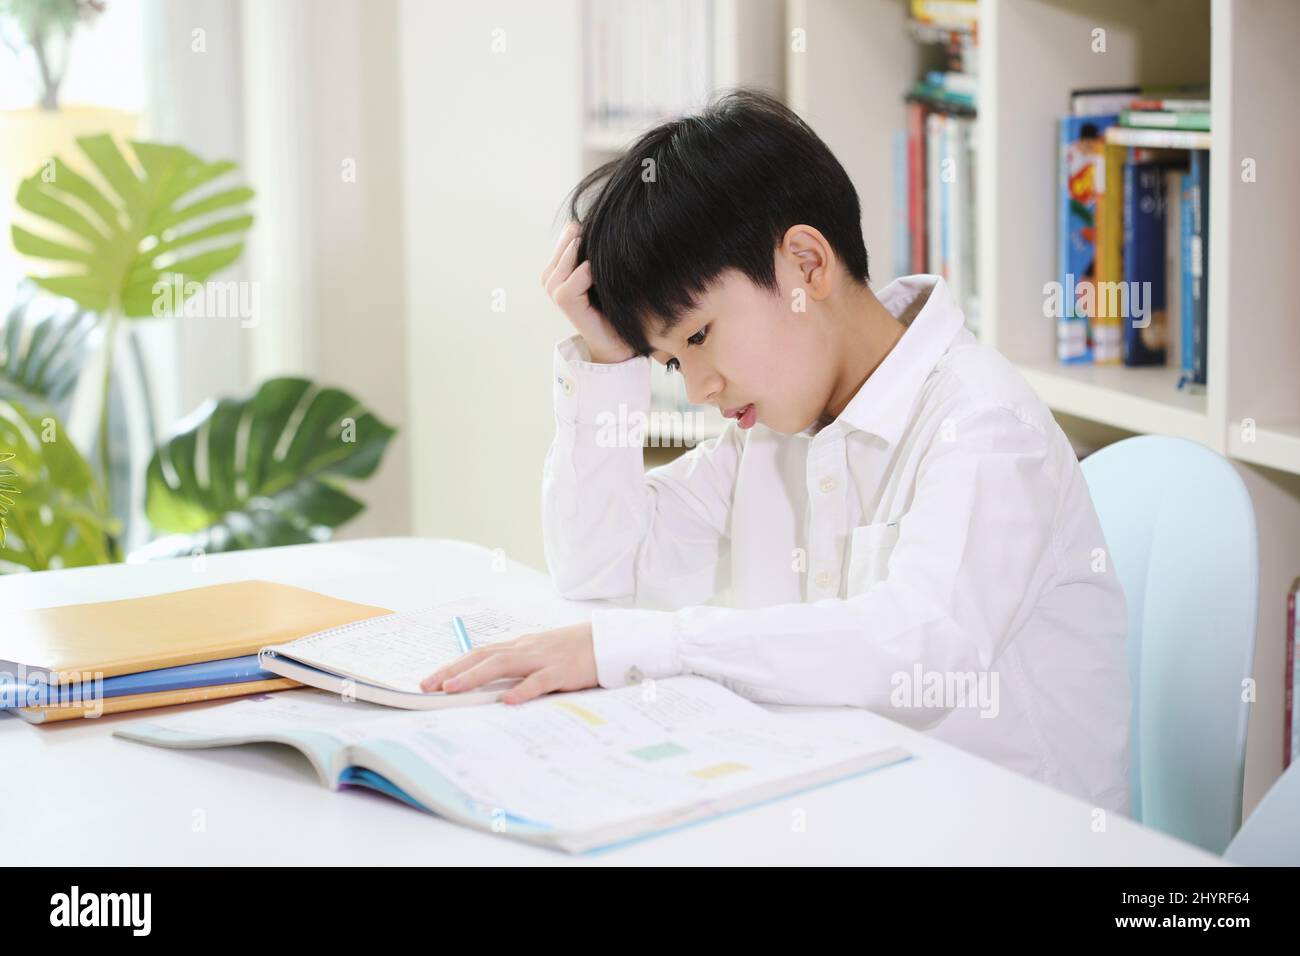 Ein Kind, das genug von den aufgetürmten Schulaufgaben und dem langwierigen Studium hat, lernt, indem es schwierige Probleme mit einem müden Blick löst. Stockfoto